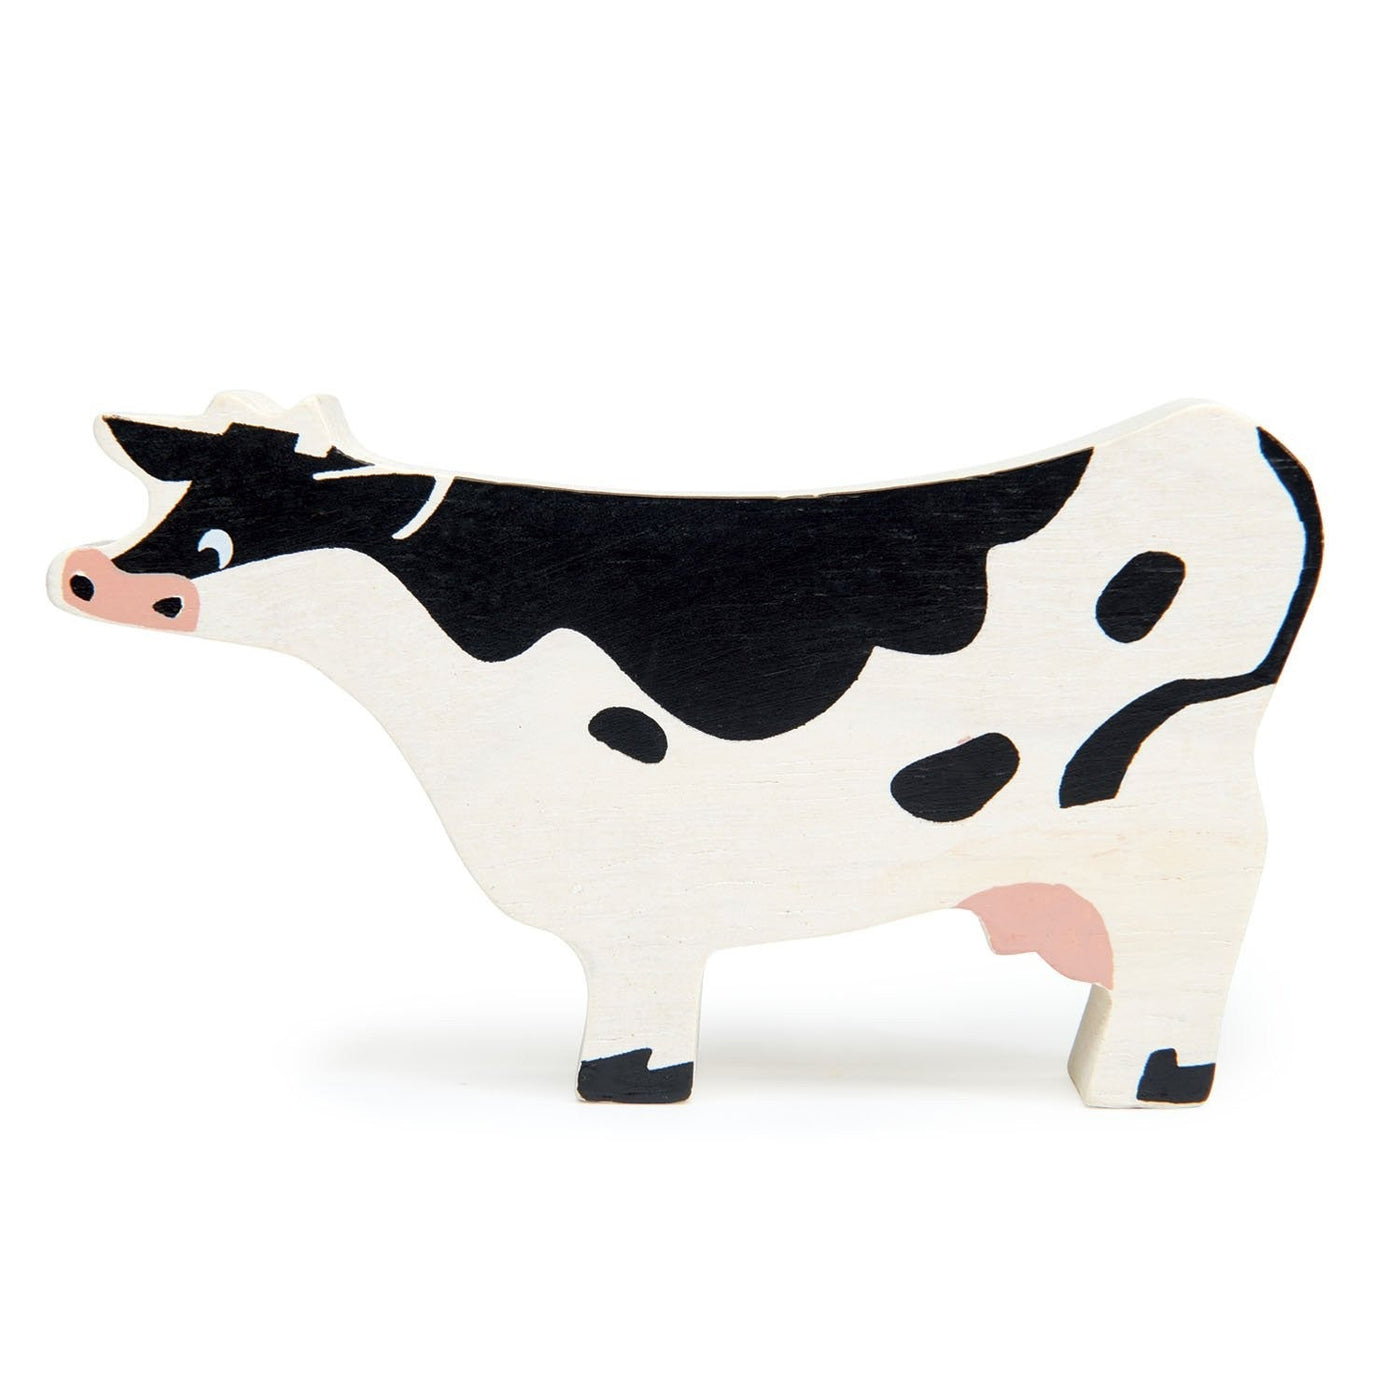 Tender Leaf Toys Farmyard - Cow